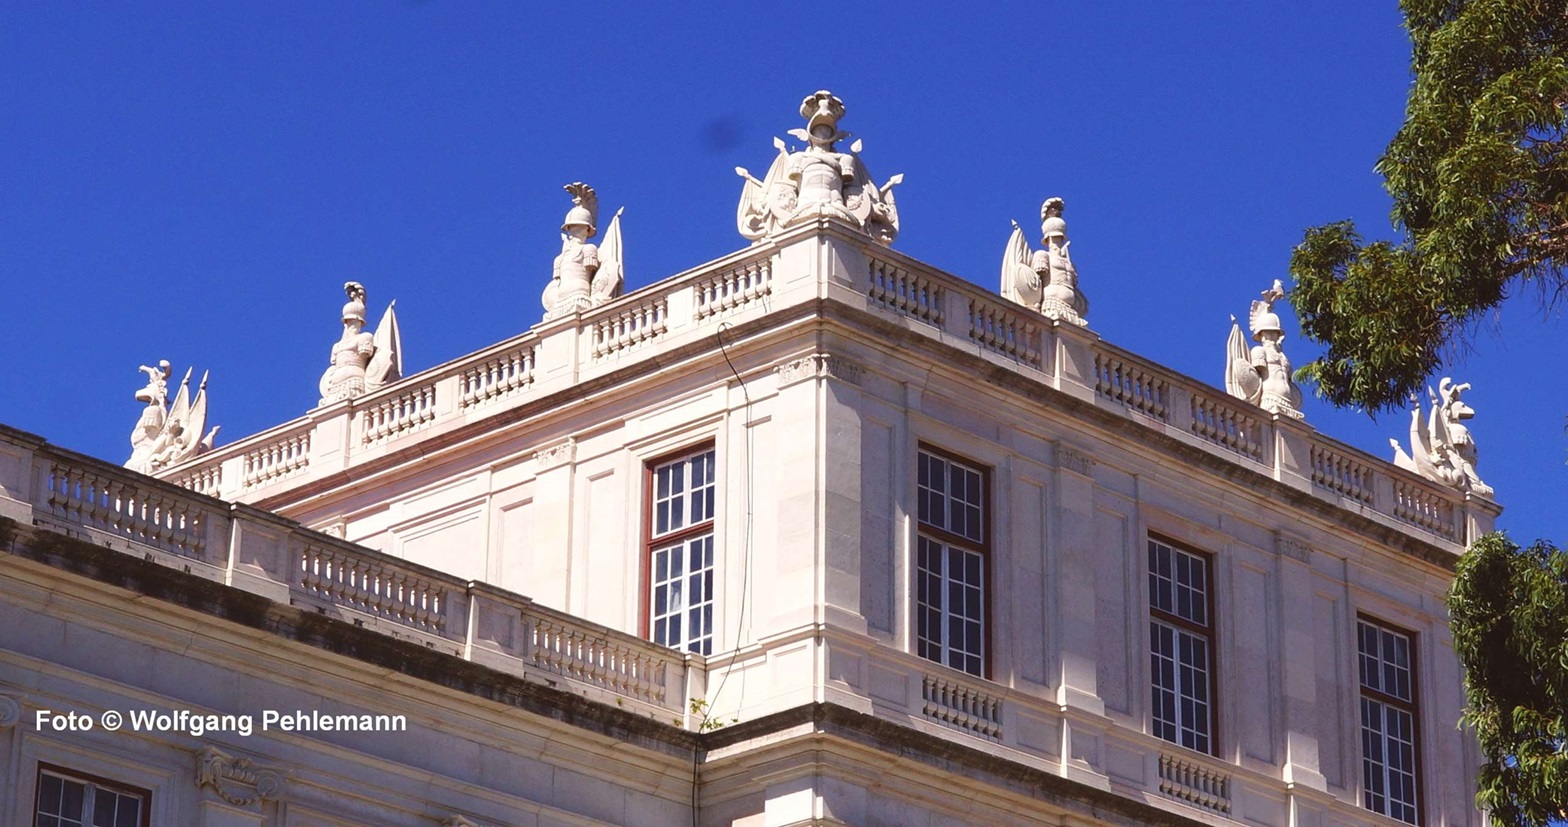 Die königlichen Vasallen des Palácio Nacional da Ajuda Lissabon Portugal - Foto © Wolfgang Pehlemann DSC02277